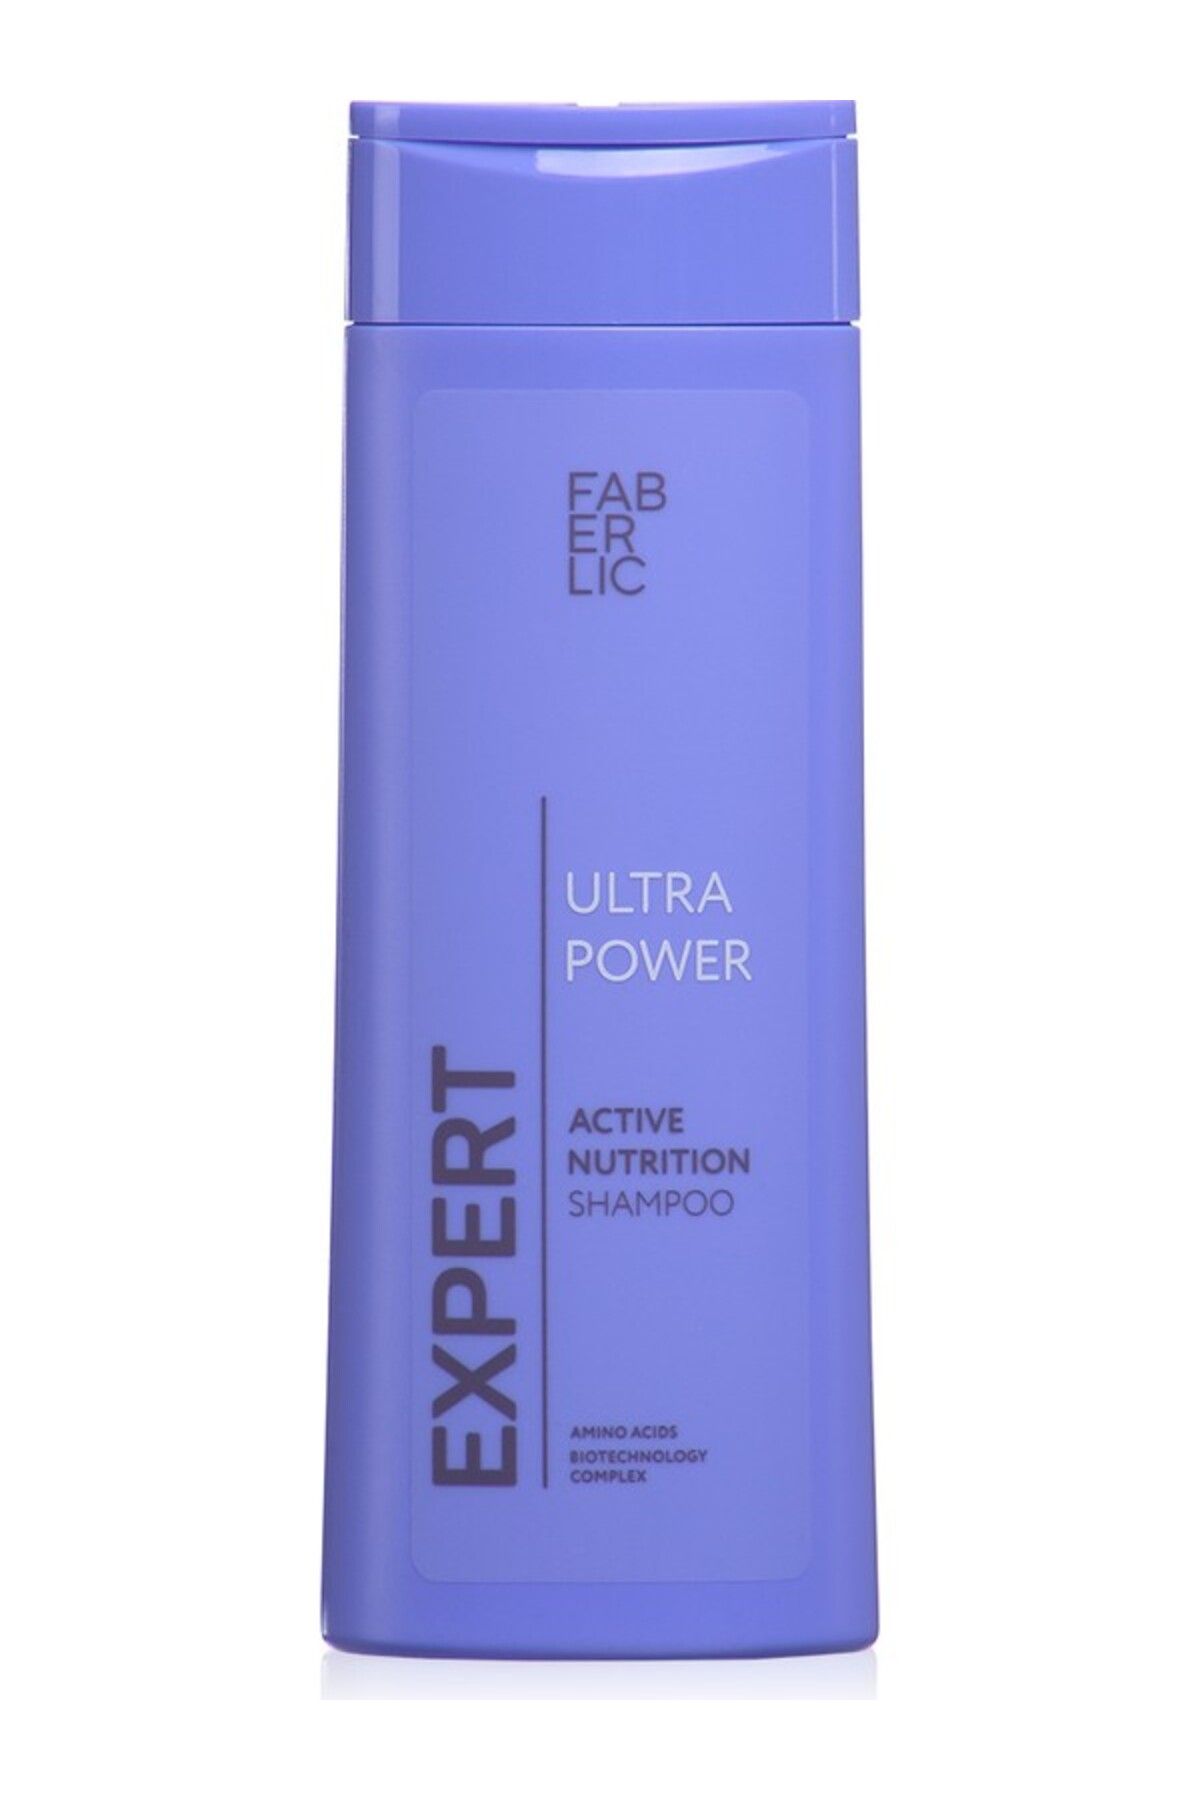 Faberlic Expert Serisi Tüm Saç Tipleri Için Besleyici Şampuan Ultra Power - 400 ml